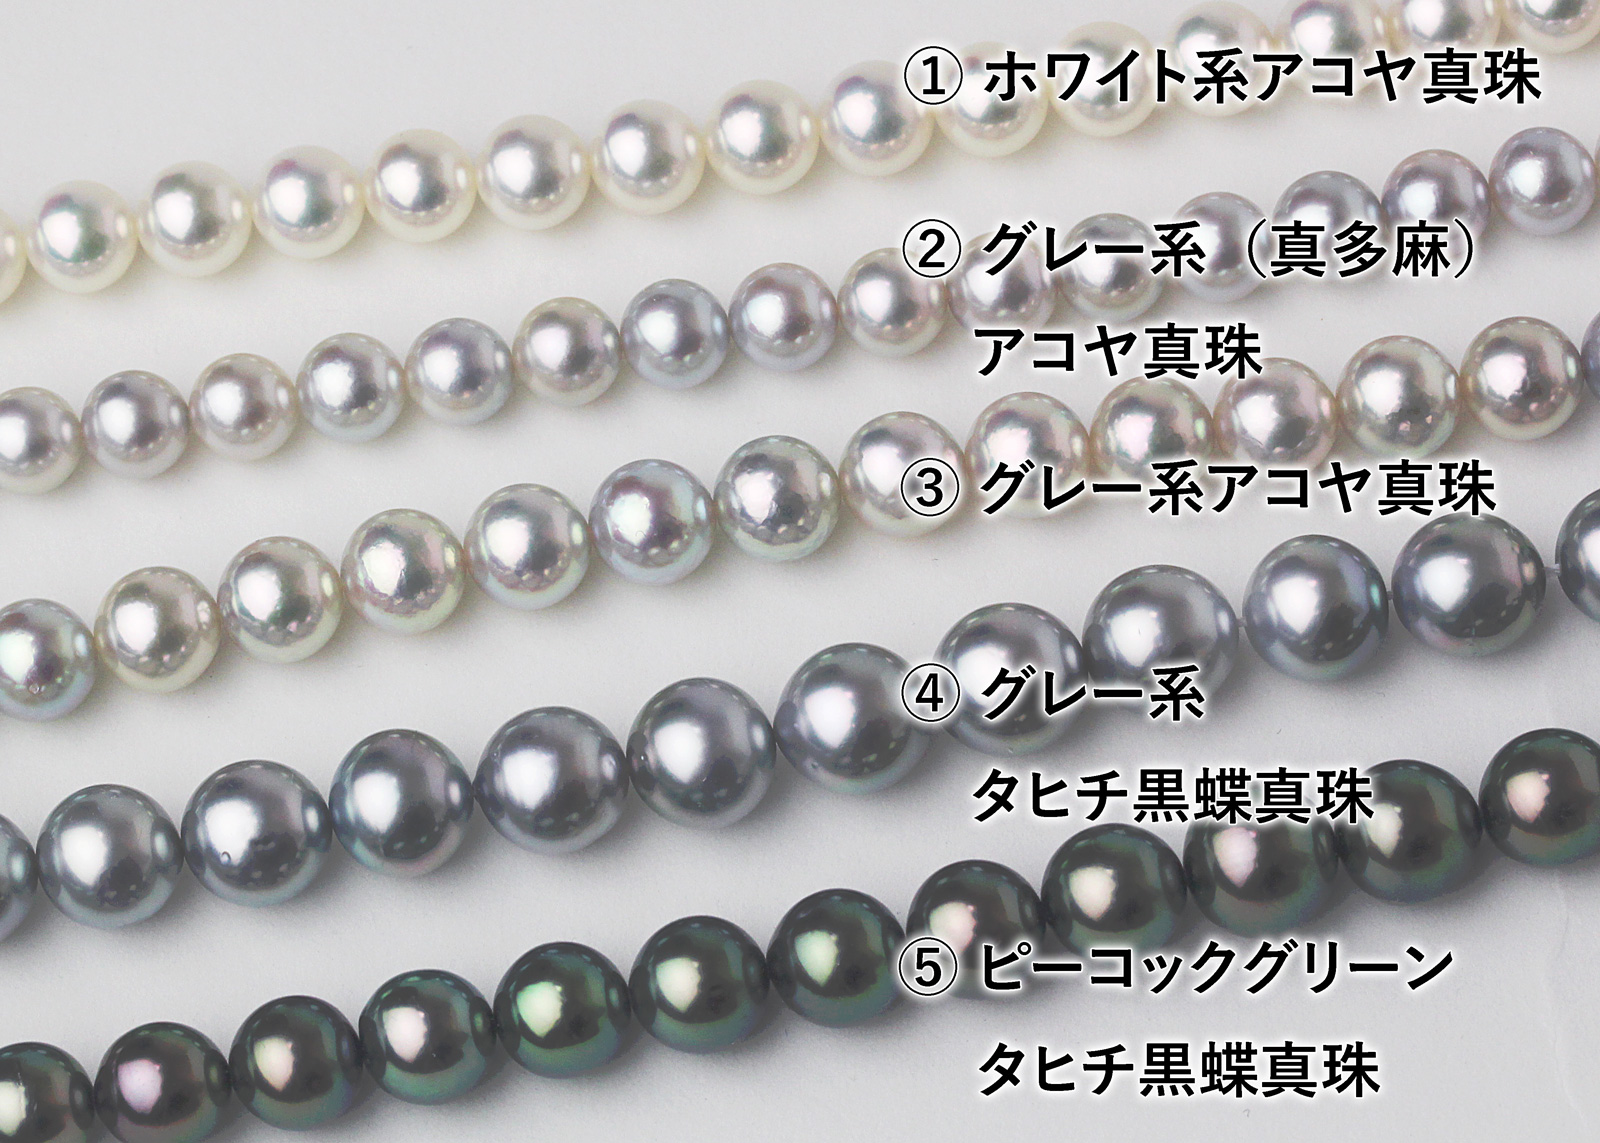 パールネックレスの種類と選び方 | 宇和島イノウエパール 花珠真珠ネックレス専門店 Uwajima Inoue Pearl